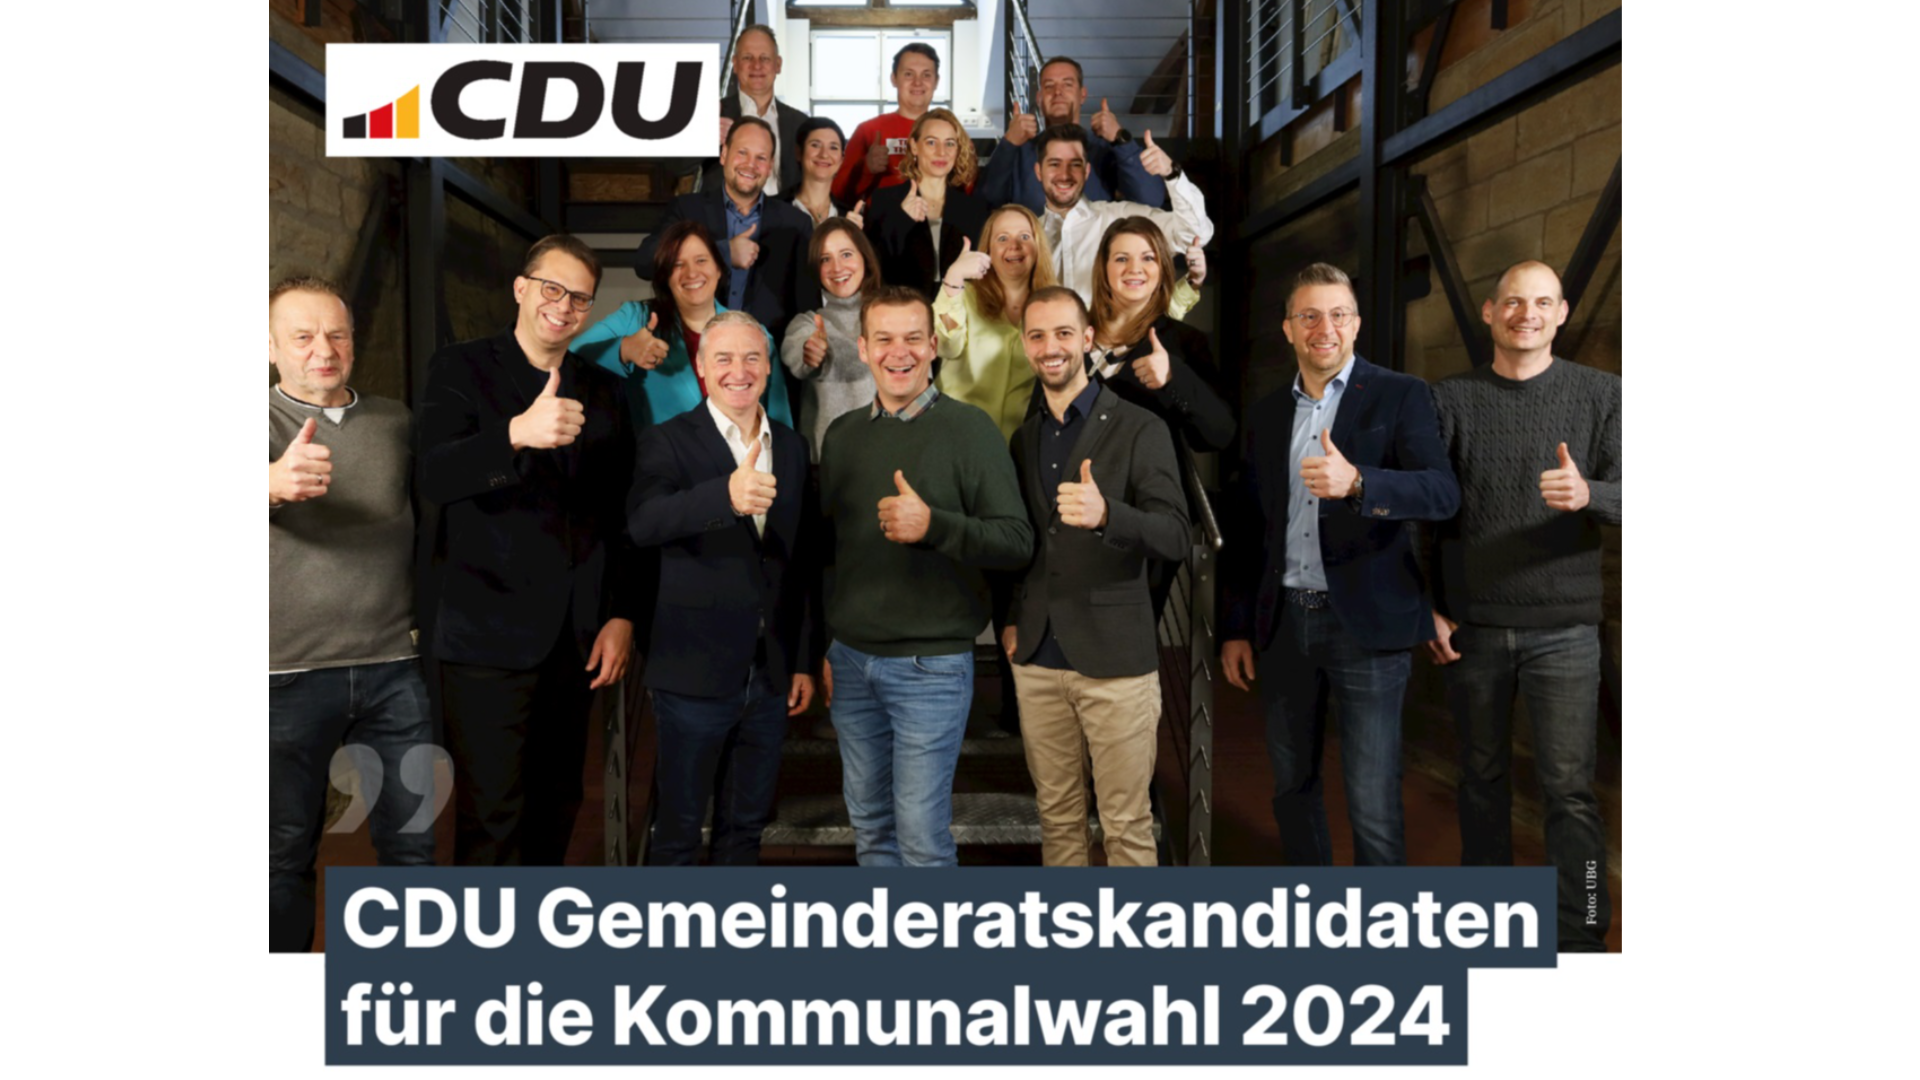 Unsere CDU Gemeinderatskandidaten! Ein starkes Team für ein starkes Nordheim! 